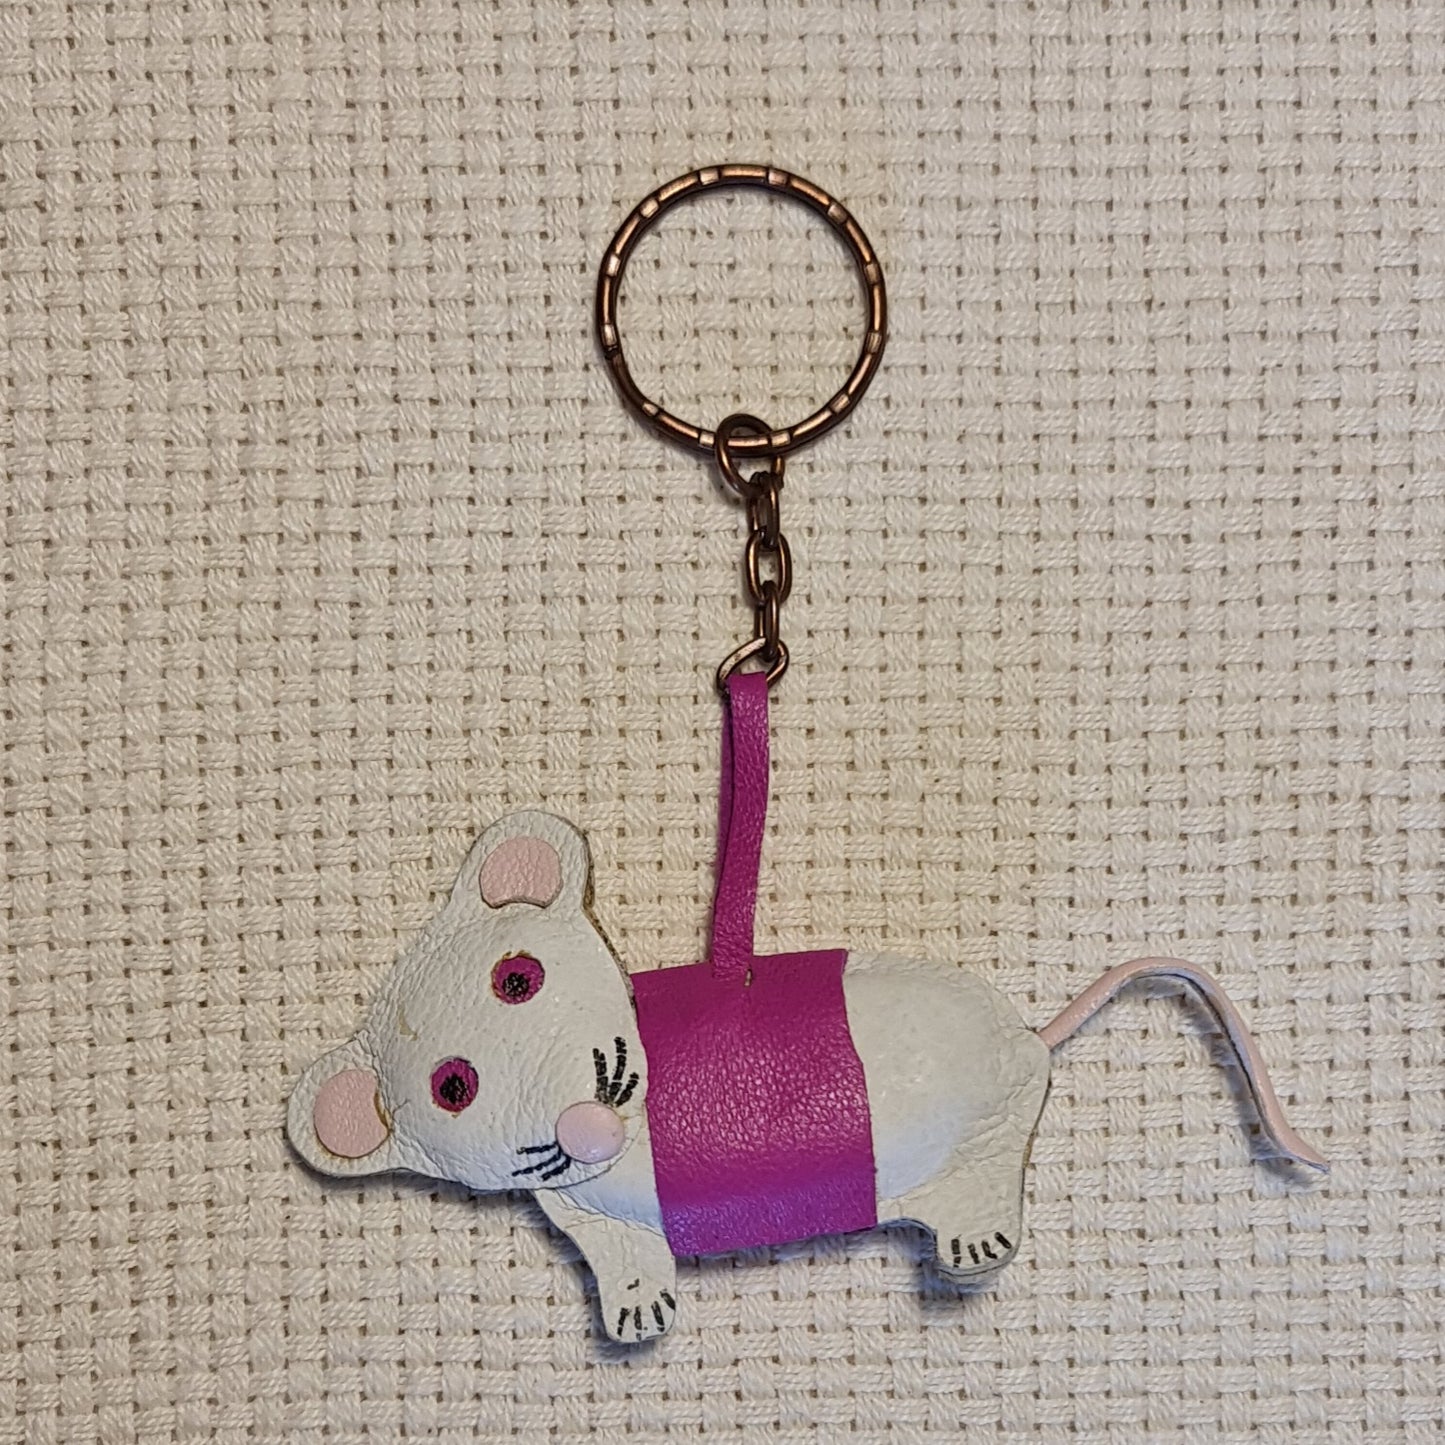 Ādas atslēgu piekariņš horoskopu zīme - pele balti violetā krāsā (8 x 5 cm bez metāliskās daļas) (JŠČ)